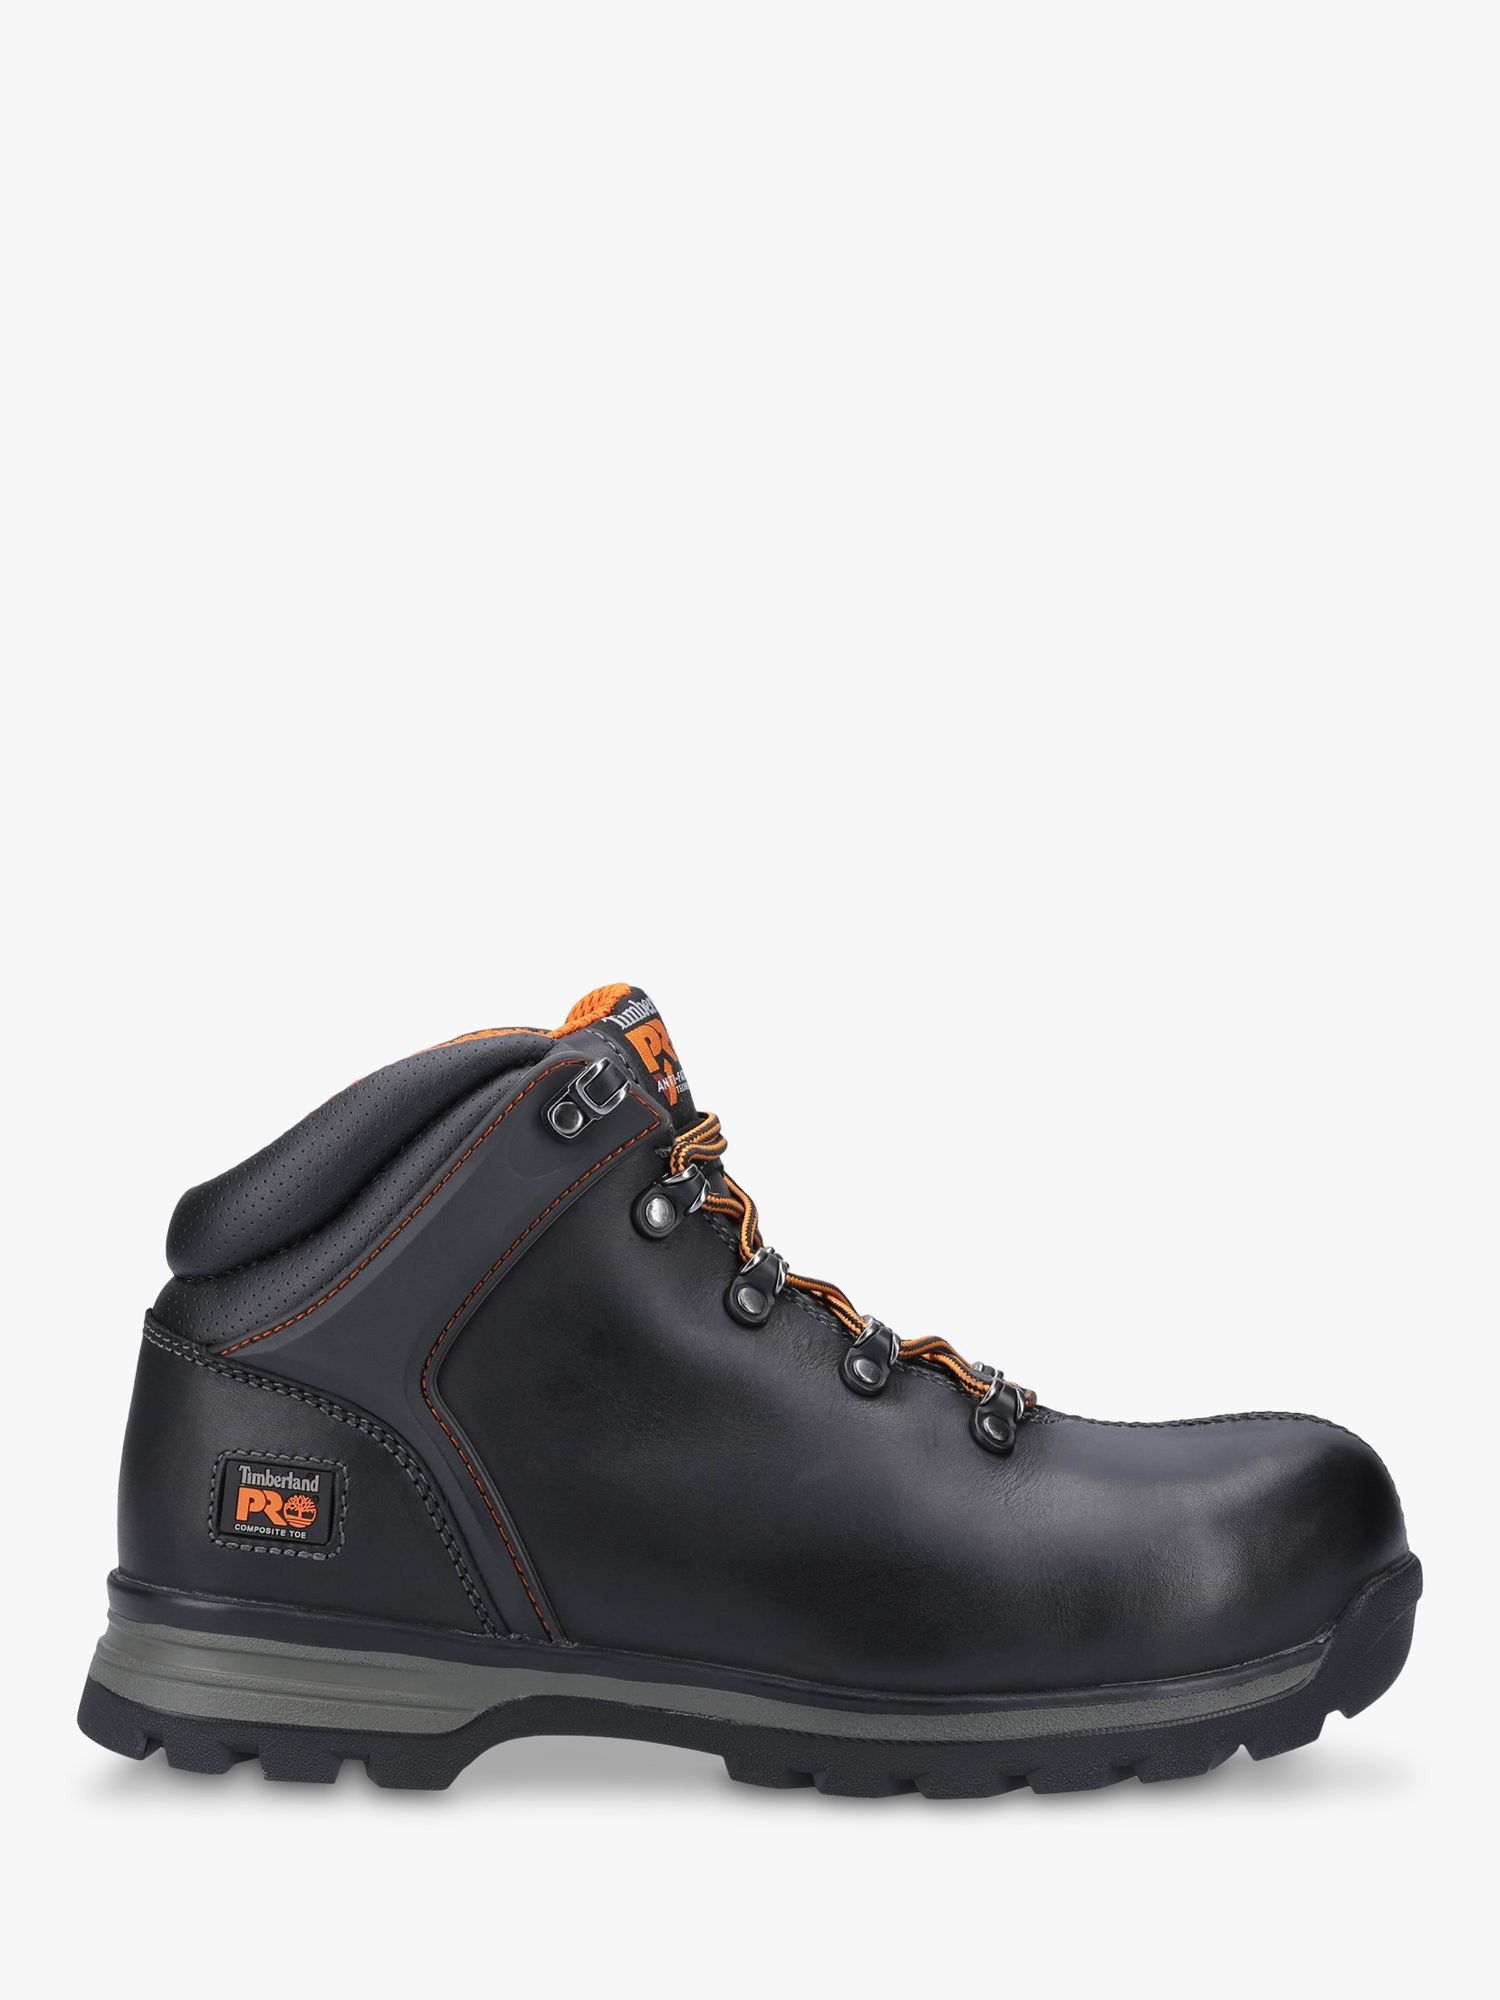 Кожаные рабочие ботинки Timberland Pro Splitrock XT с композитным носком,черные – купить по выгодным ценам с доставкой из-за рубежа через сервис«CDEK.Shopping»